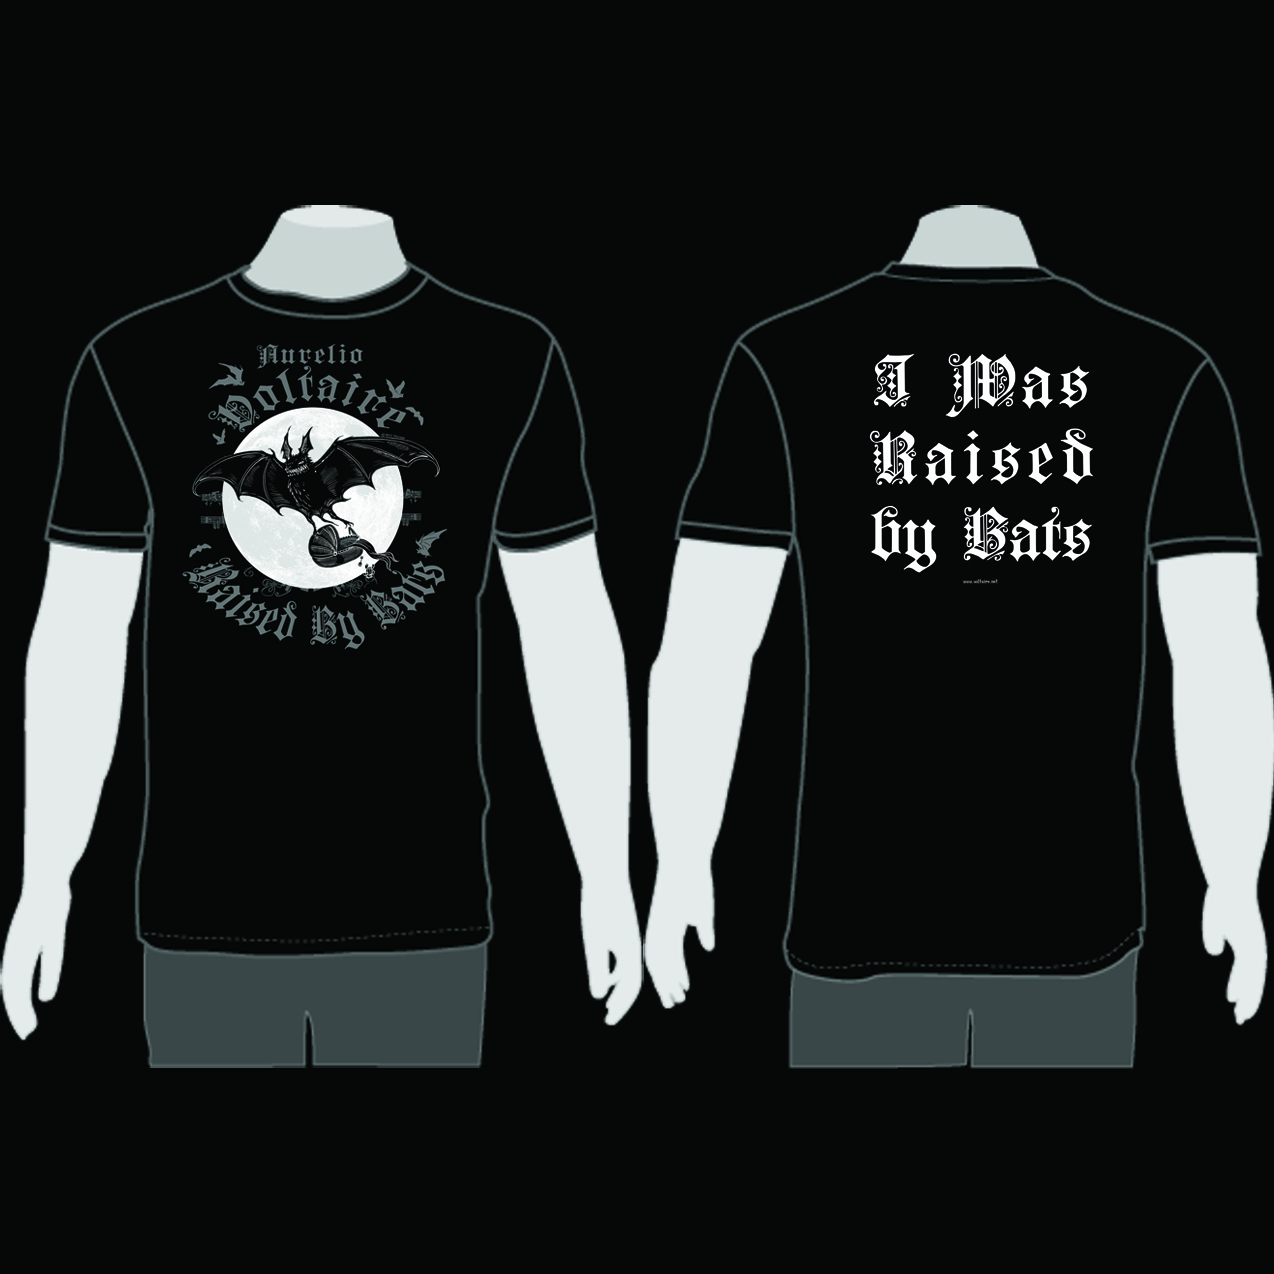 Raised By Bats Shirt - MEDIUM - Click Image to Close